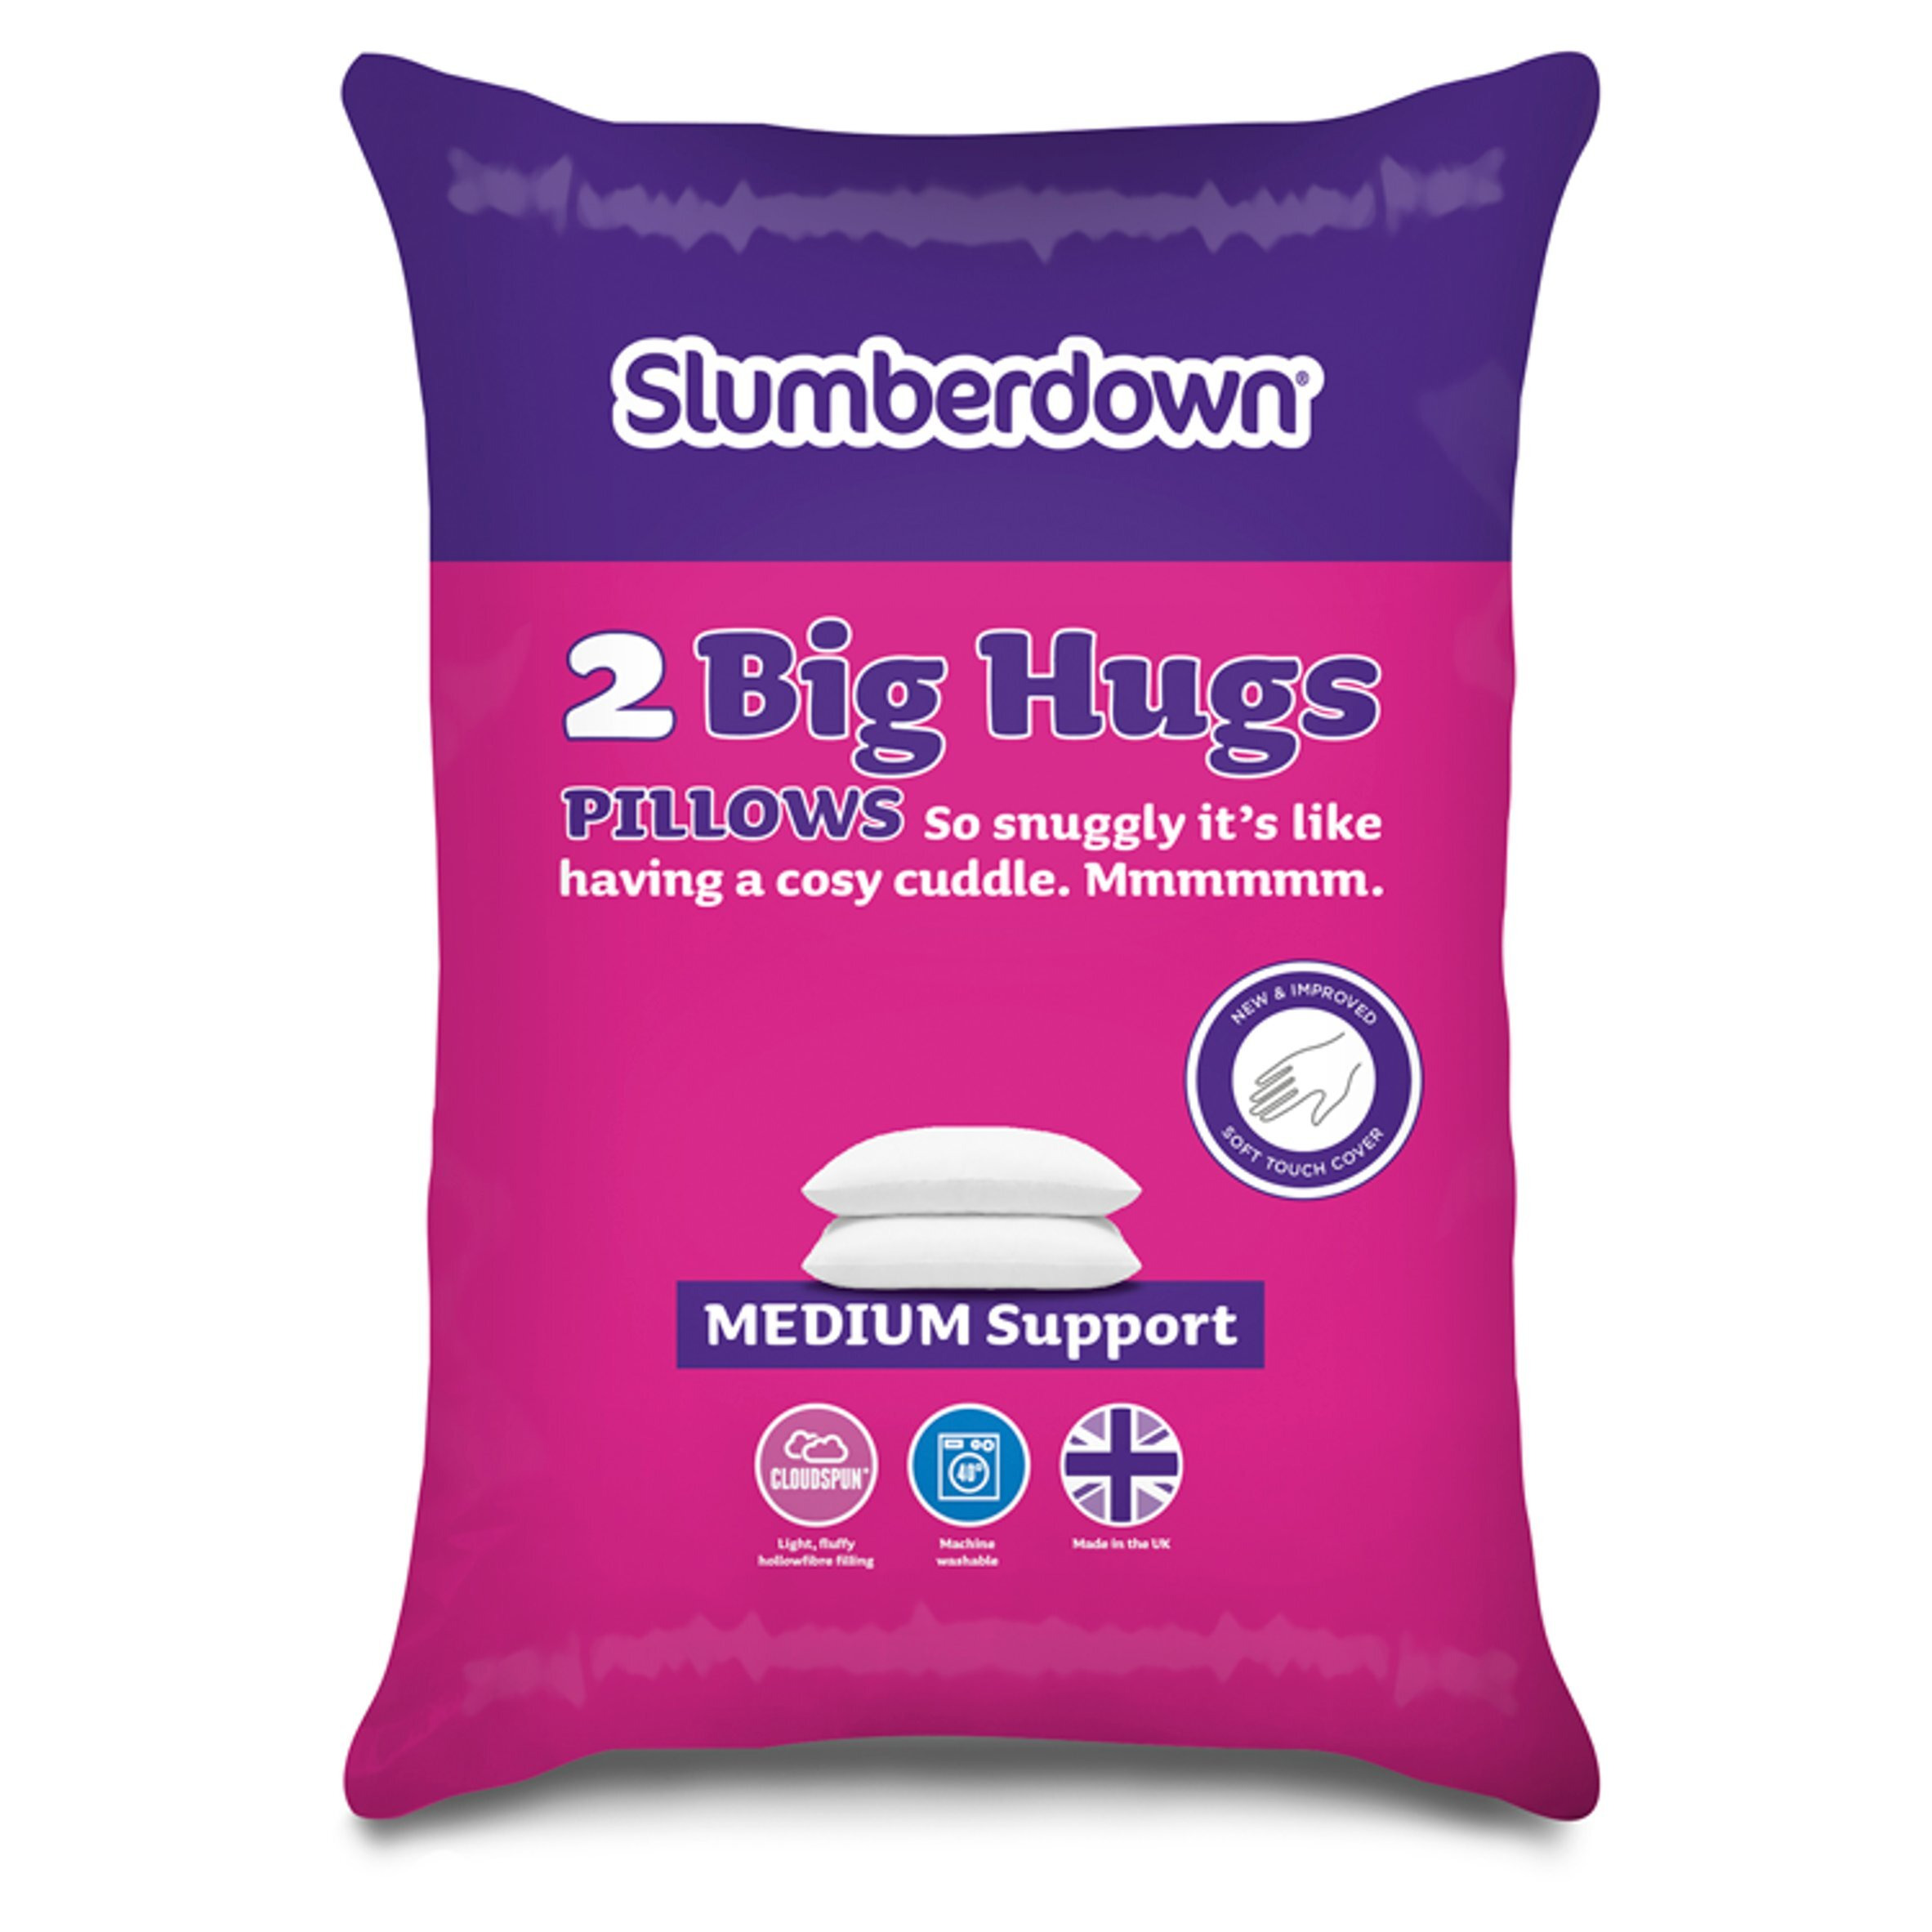 Slumberdown Big Hugs Pillows Pair